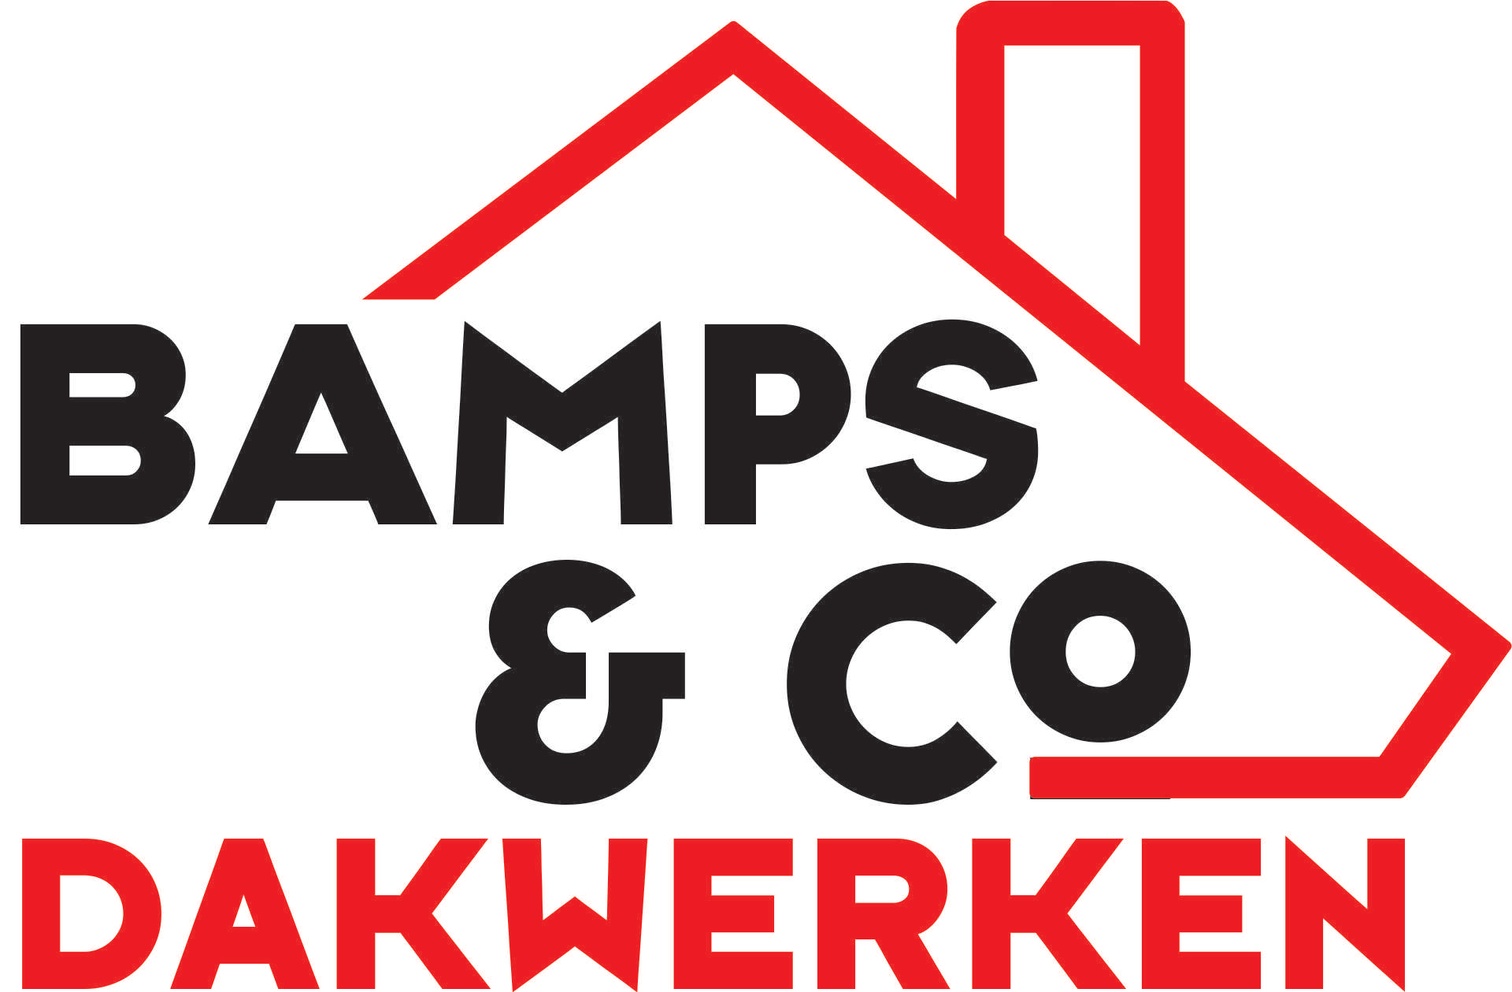 logo Dakwerken Bamps & Co bv